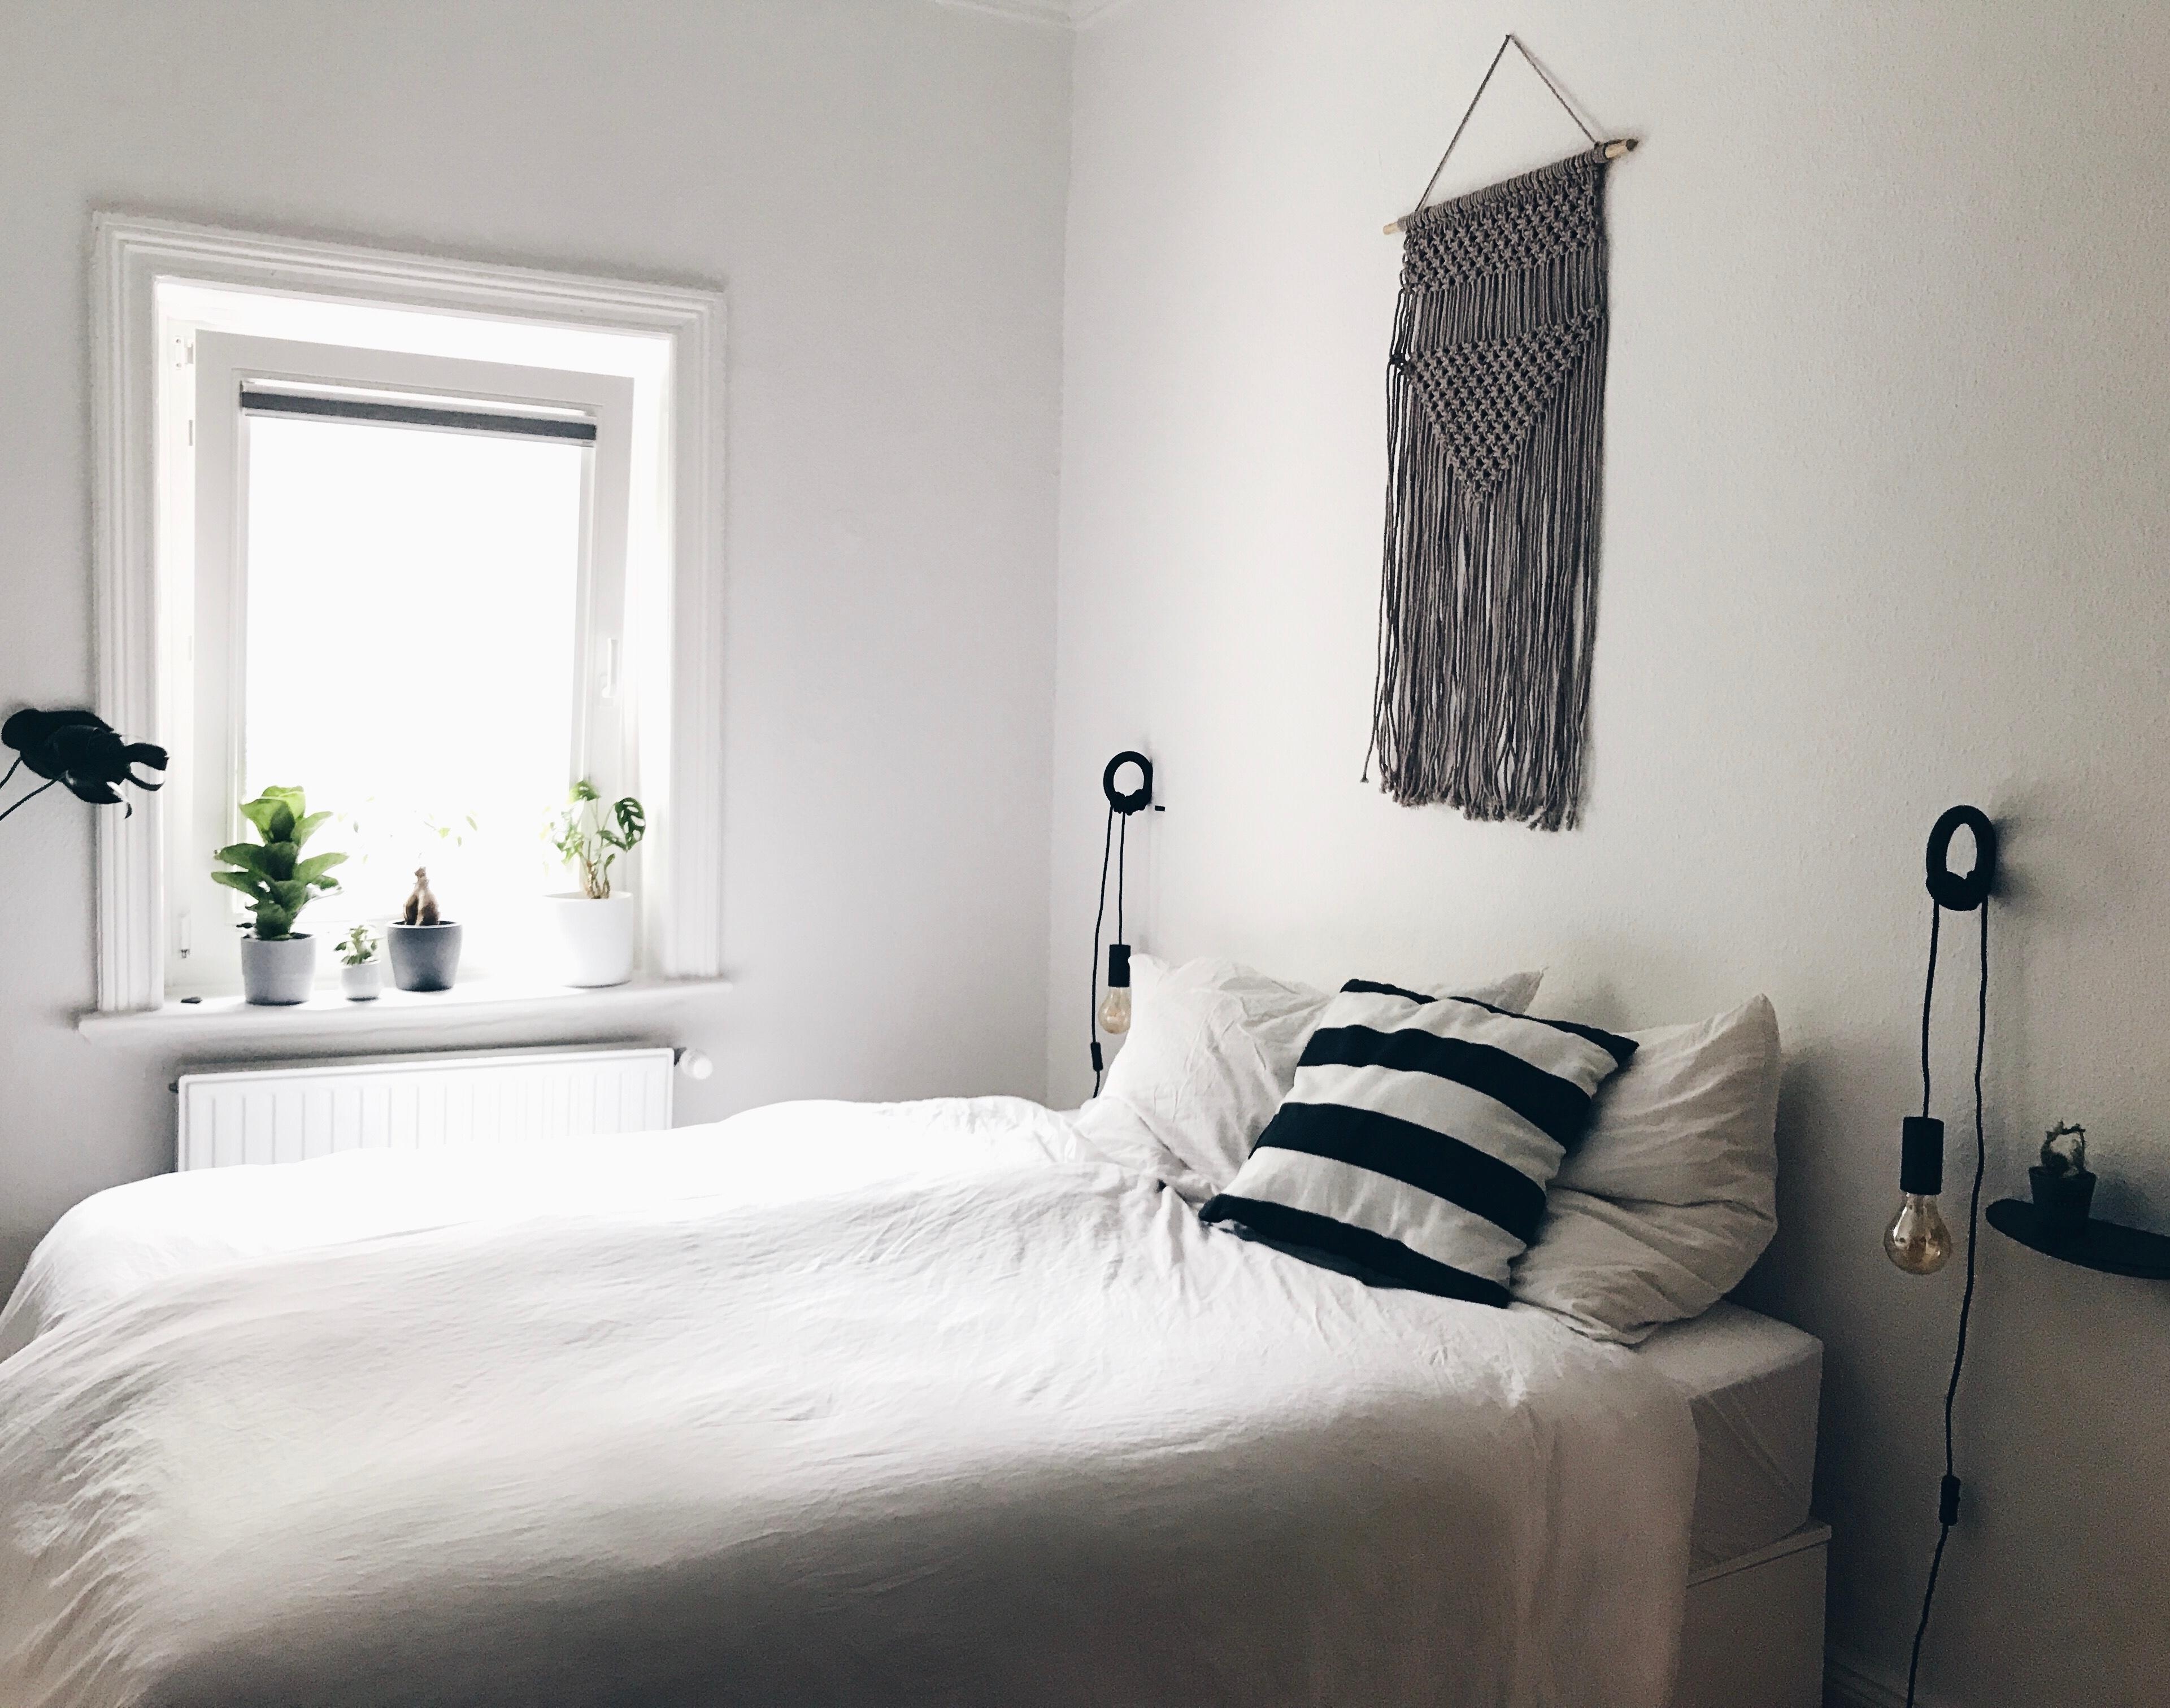 Unser kleines #cosy #schlafzimmer .. 
#livingchallenge #couchliebt #altbau #altbauliebe #minimalism #whiteliving 